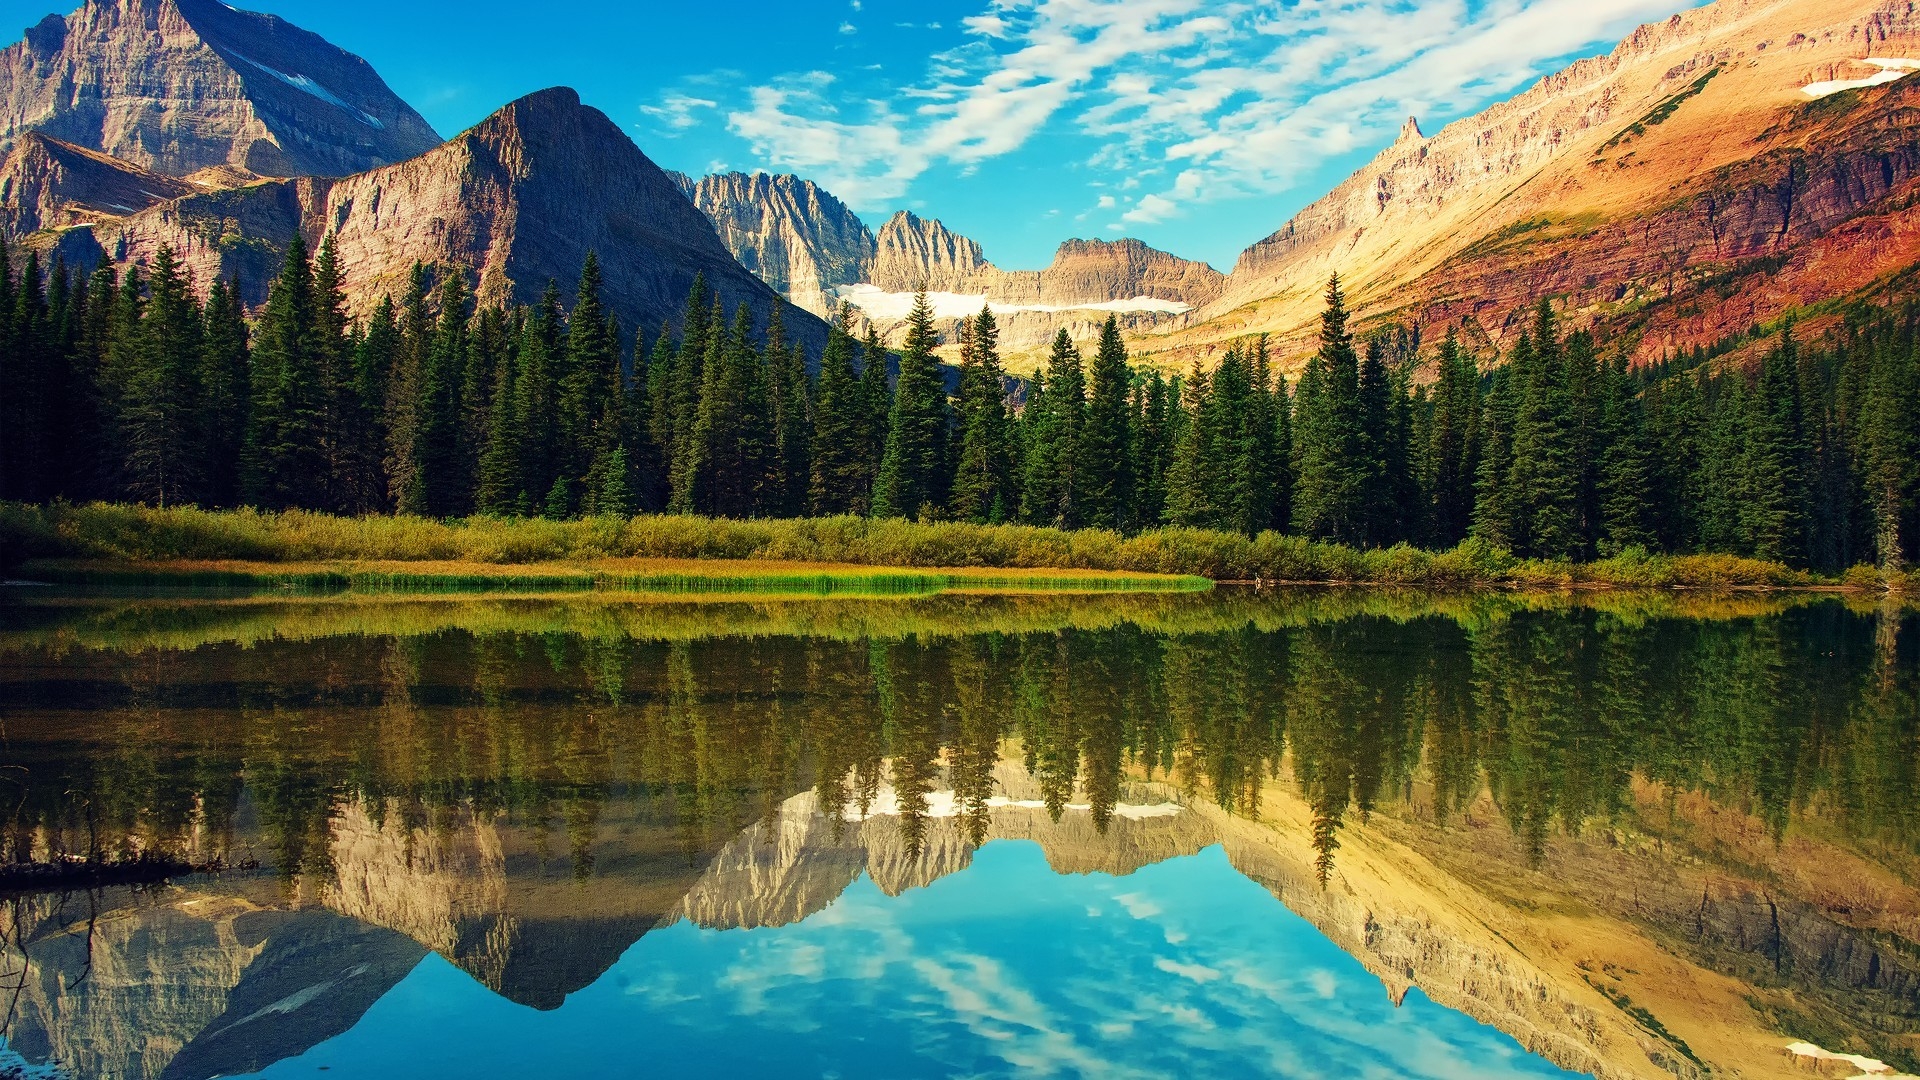 Glacier National Park Landscape for 1920 x 1080 HDTV 1080p resolution